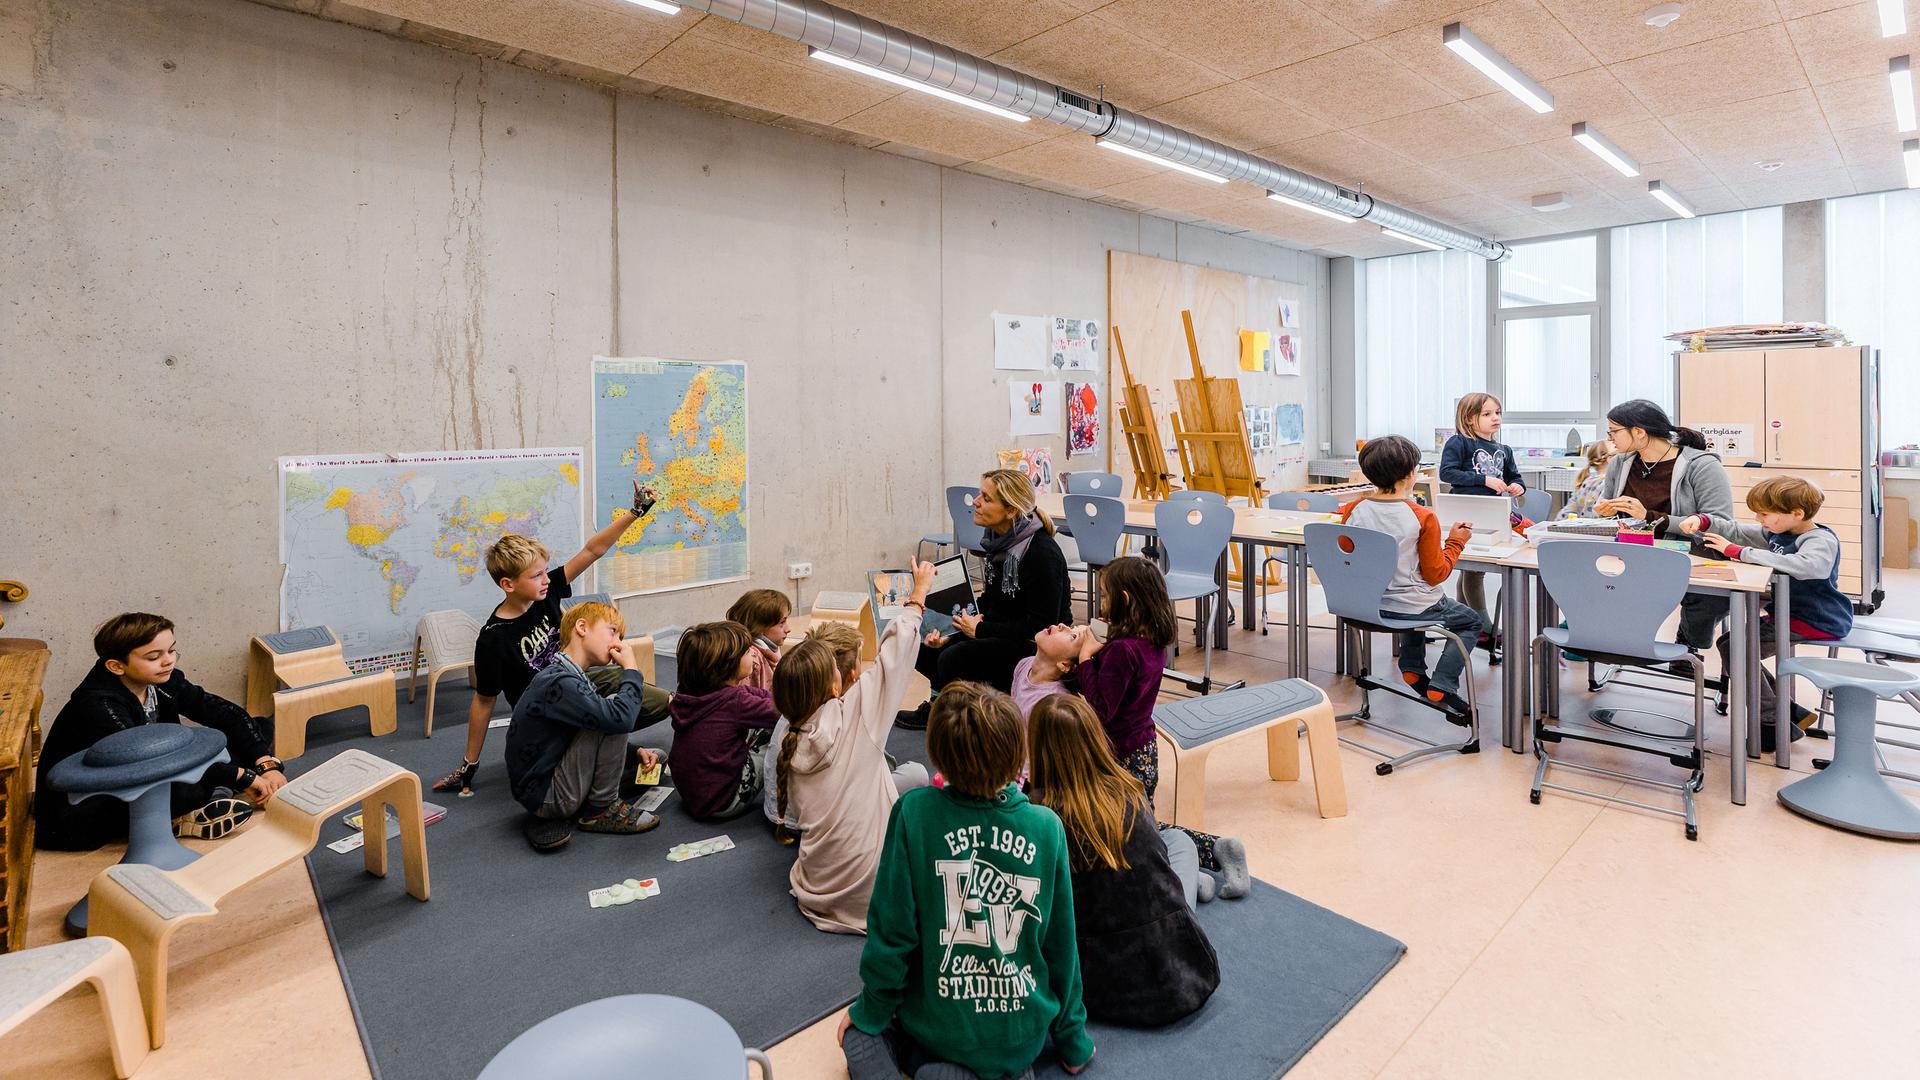 Kinder sitzen um eine Lehrerin herum auf dem Boden eines Klassenzimmers. Im Hintergrund sitzen weitere Kinder an einem Tisch. An den Wänden hängen Atlaskarten und selbstgemalte Bilder, in einer Ecke stehen Staffeleien.